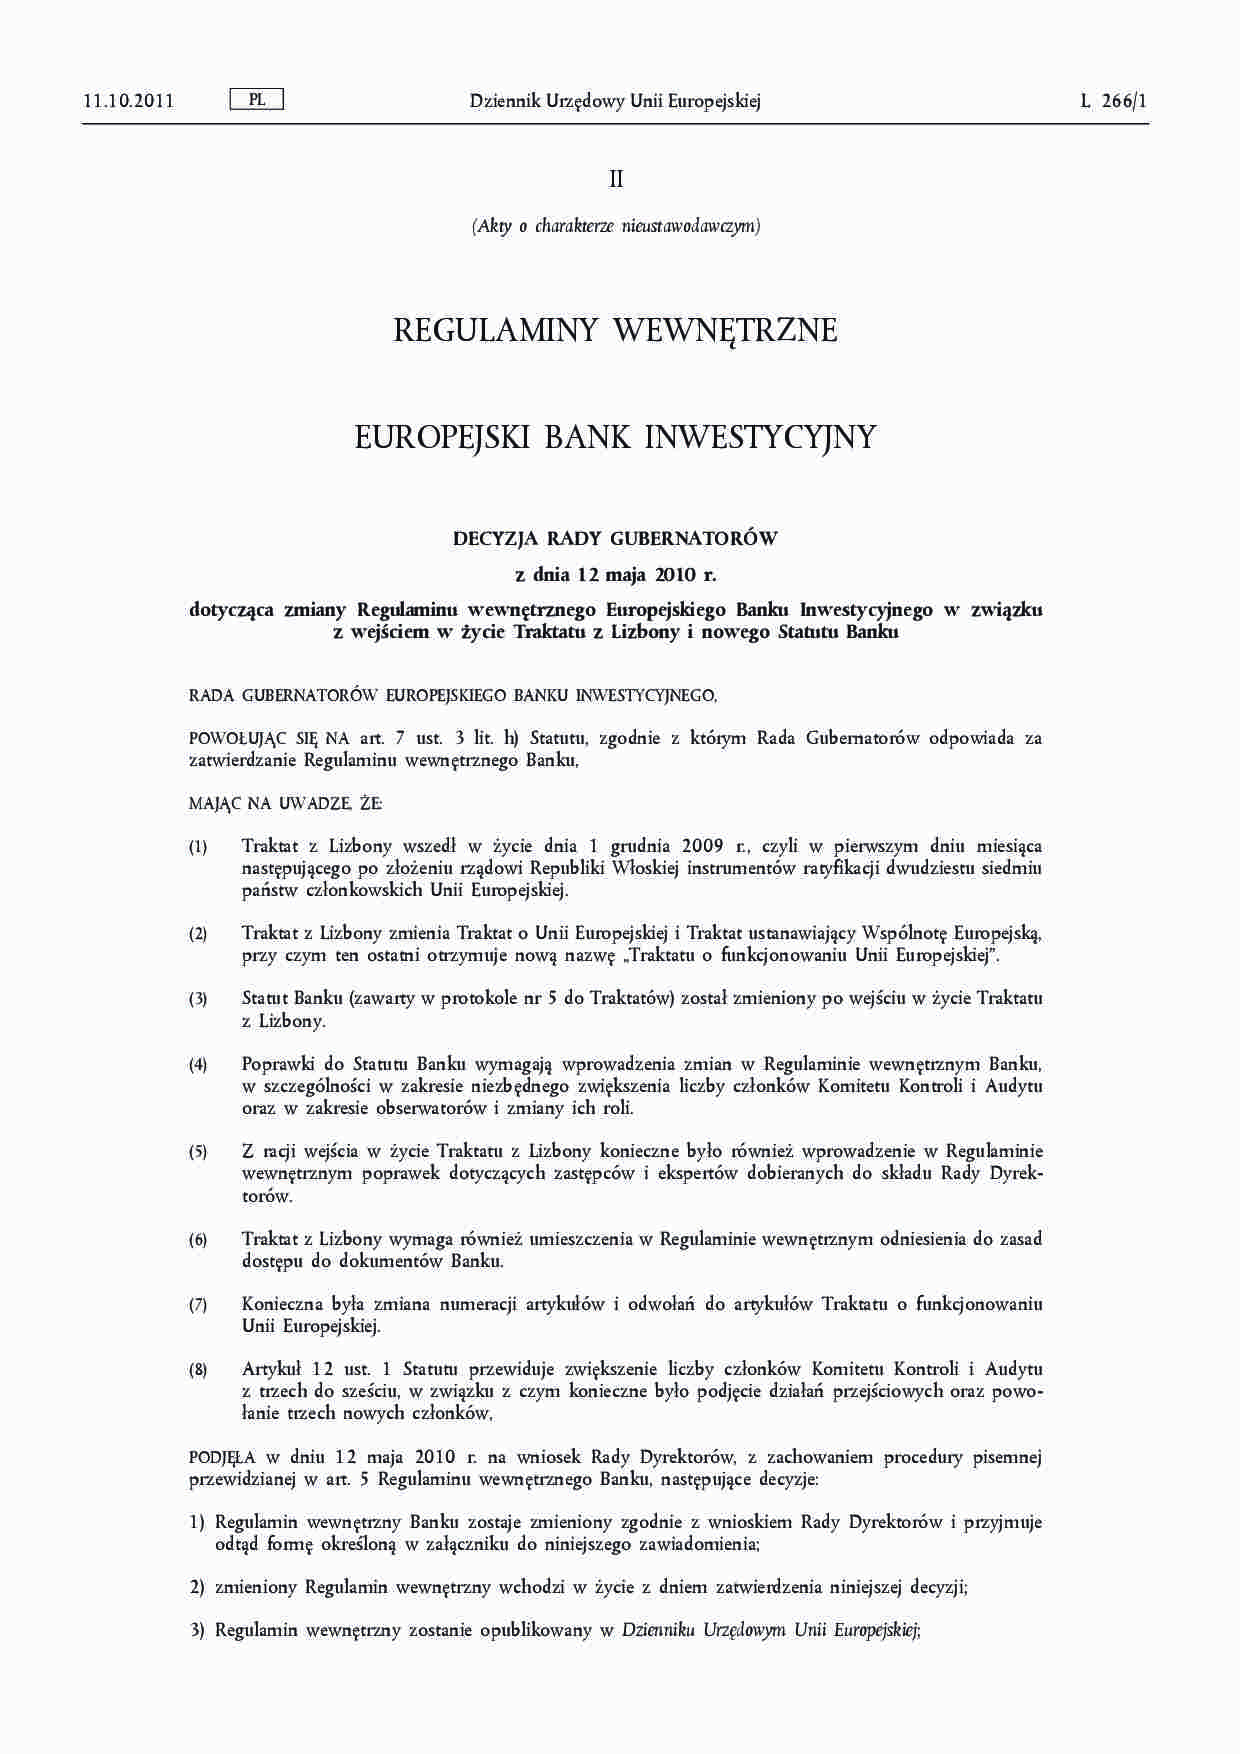 Regulamin Europejskiego Banku Inwestycyjnego - 12 maja 2010 - strona 1